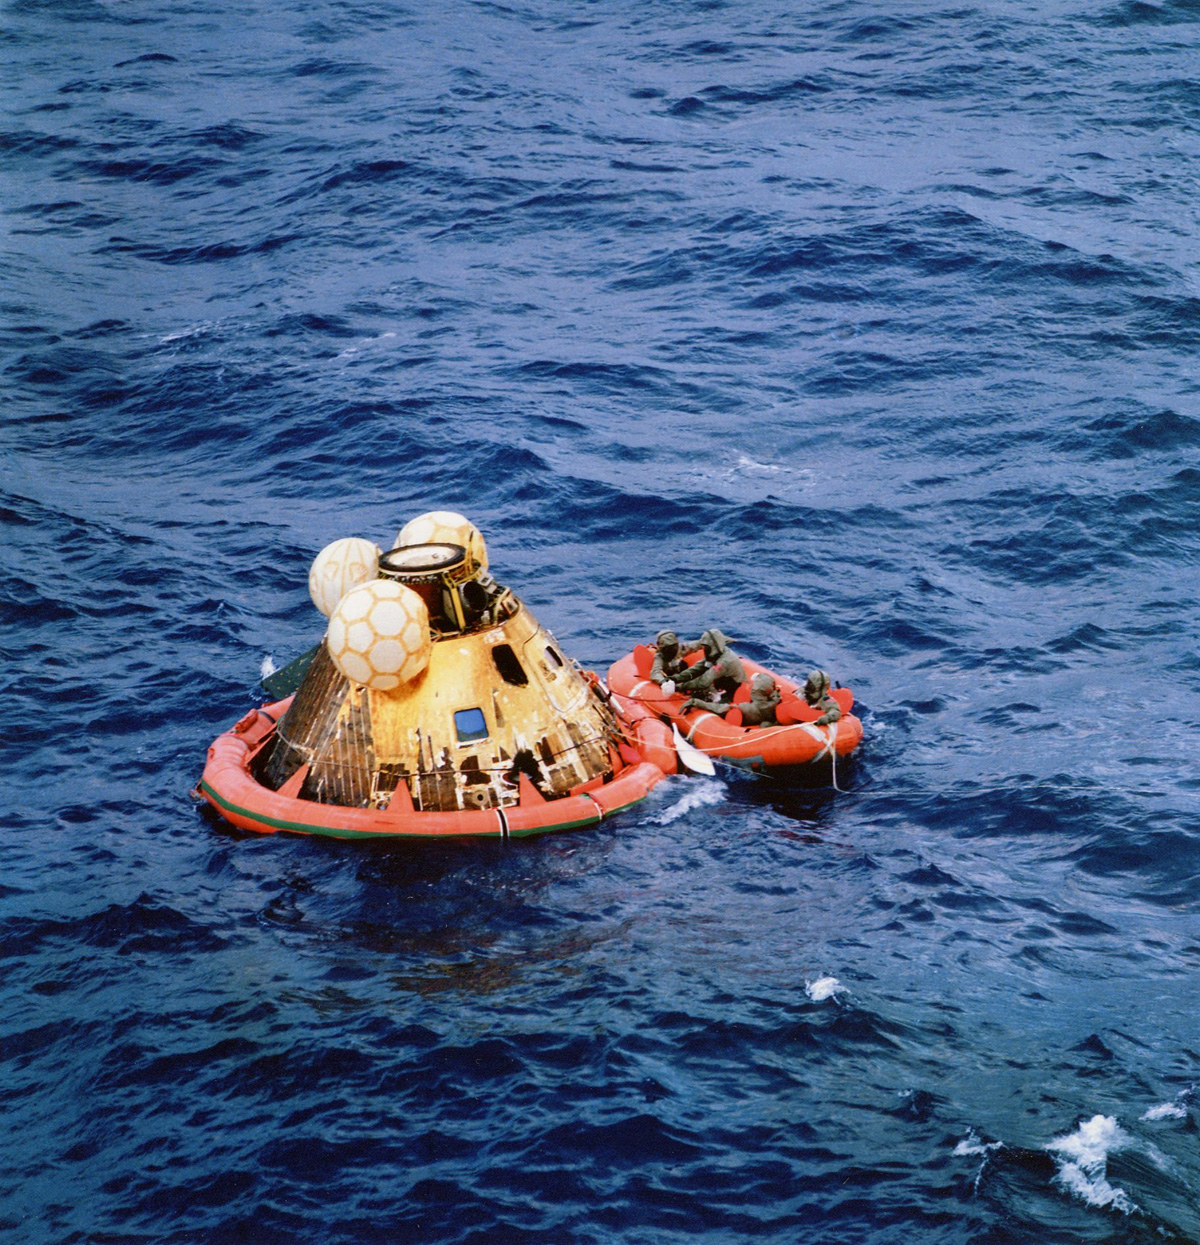 Rare Photos Reveal Fascinating Views Of The Apollo 11 Moon Landing